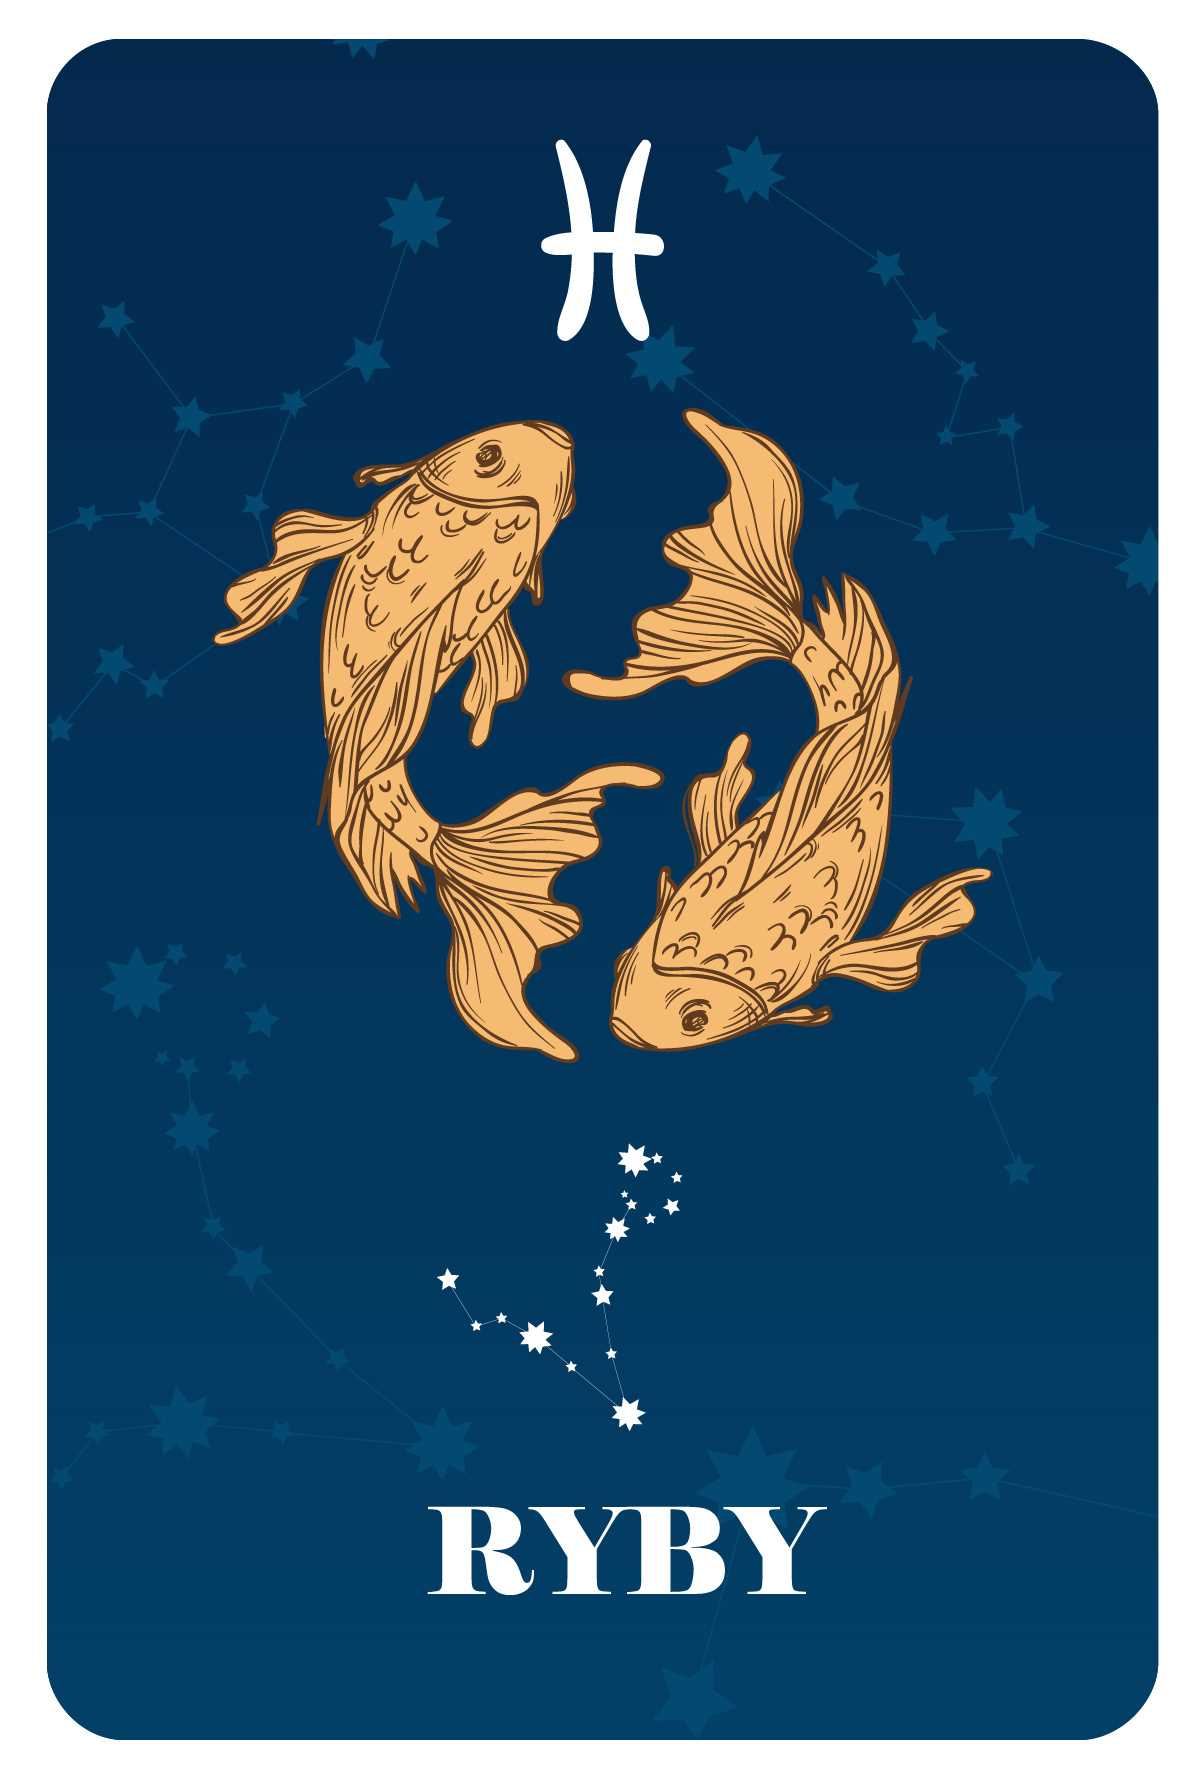 Horoskop ryby miłosny - co czeka cię w miłości? | Astrologia